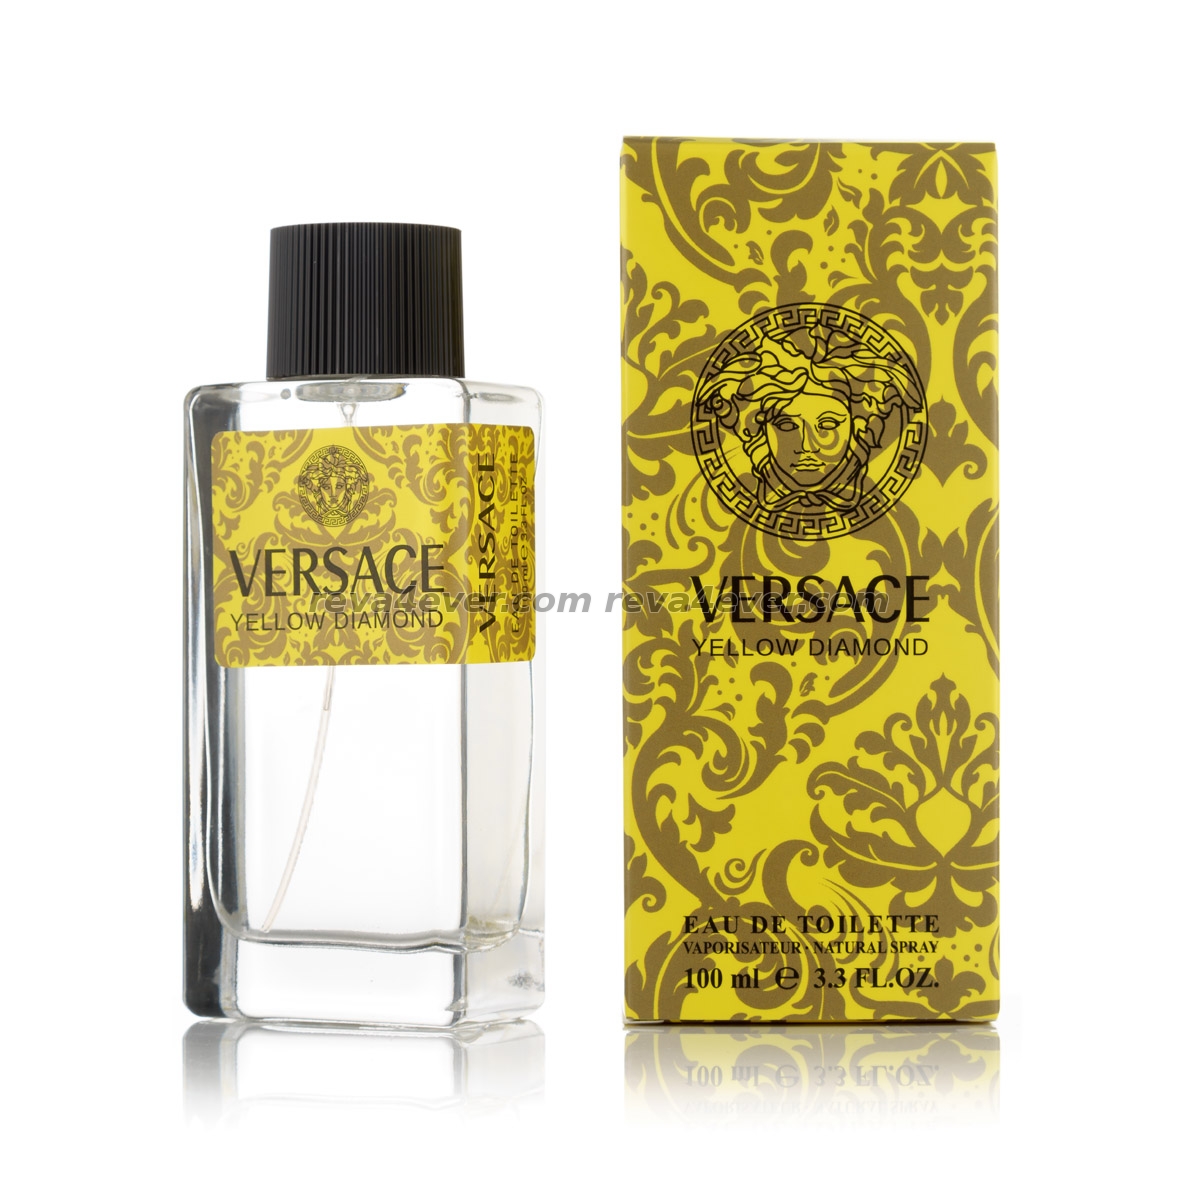 Versace Yellow Diamond edt 100ml Imperatrice style